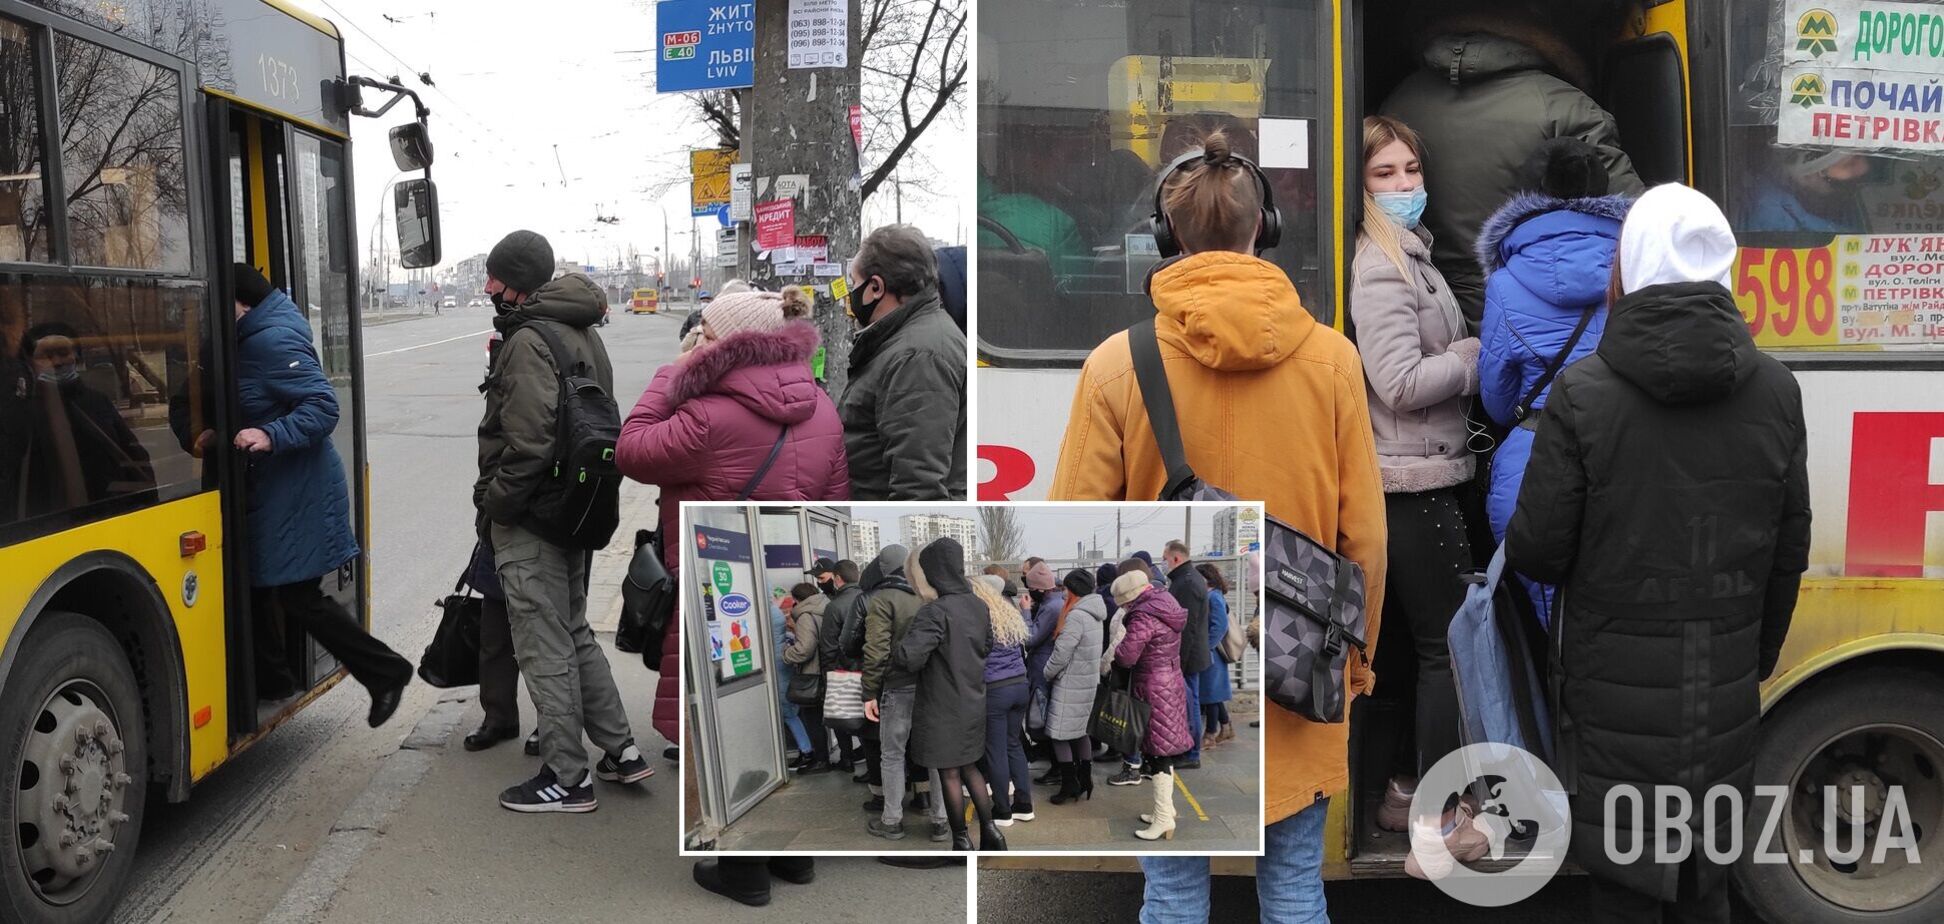 Карантин в транспорте в Киеве